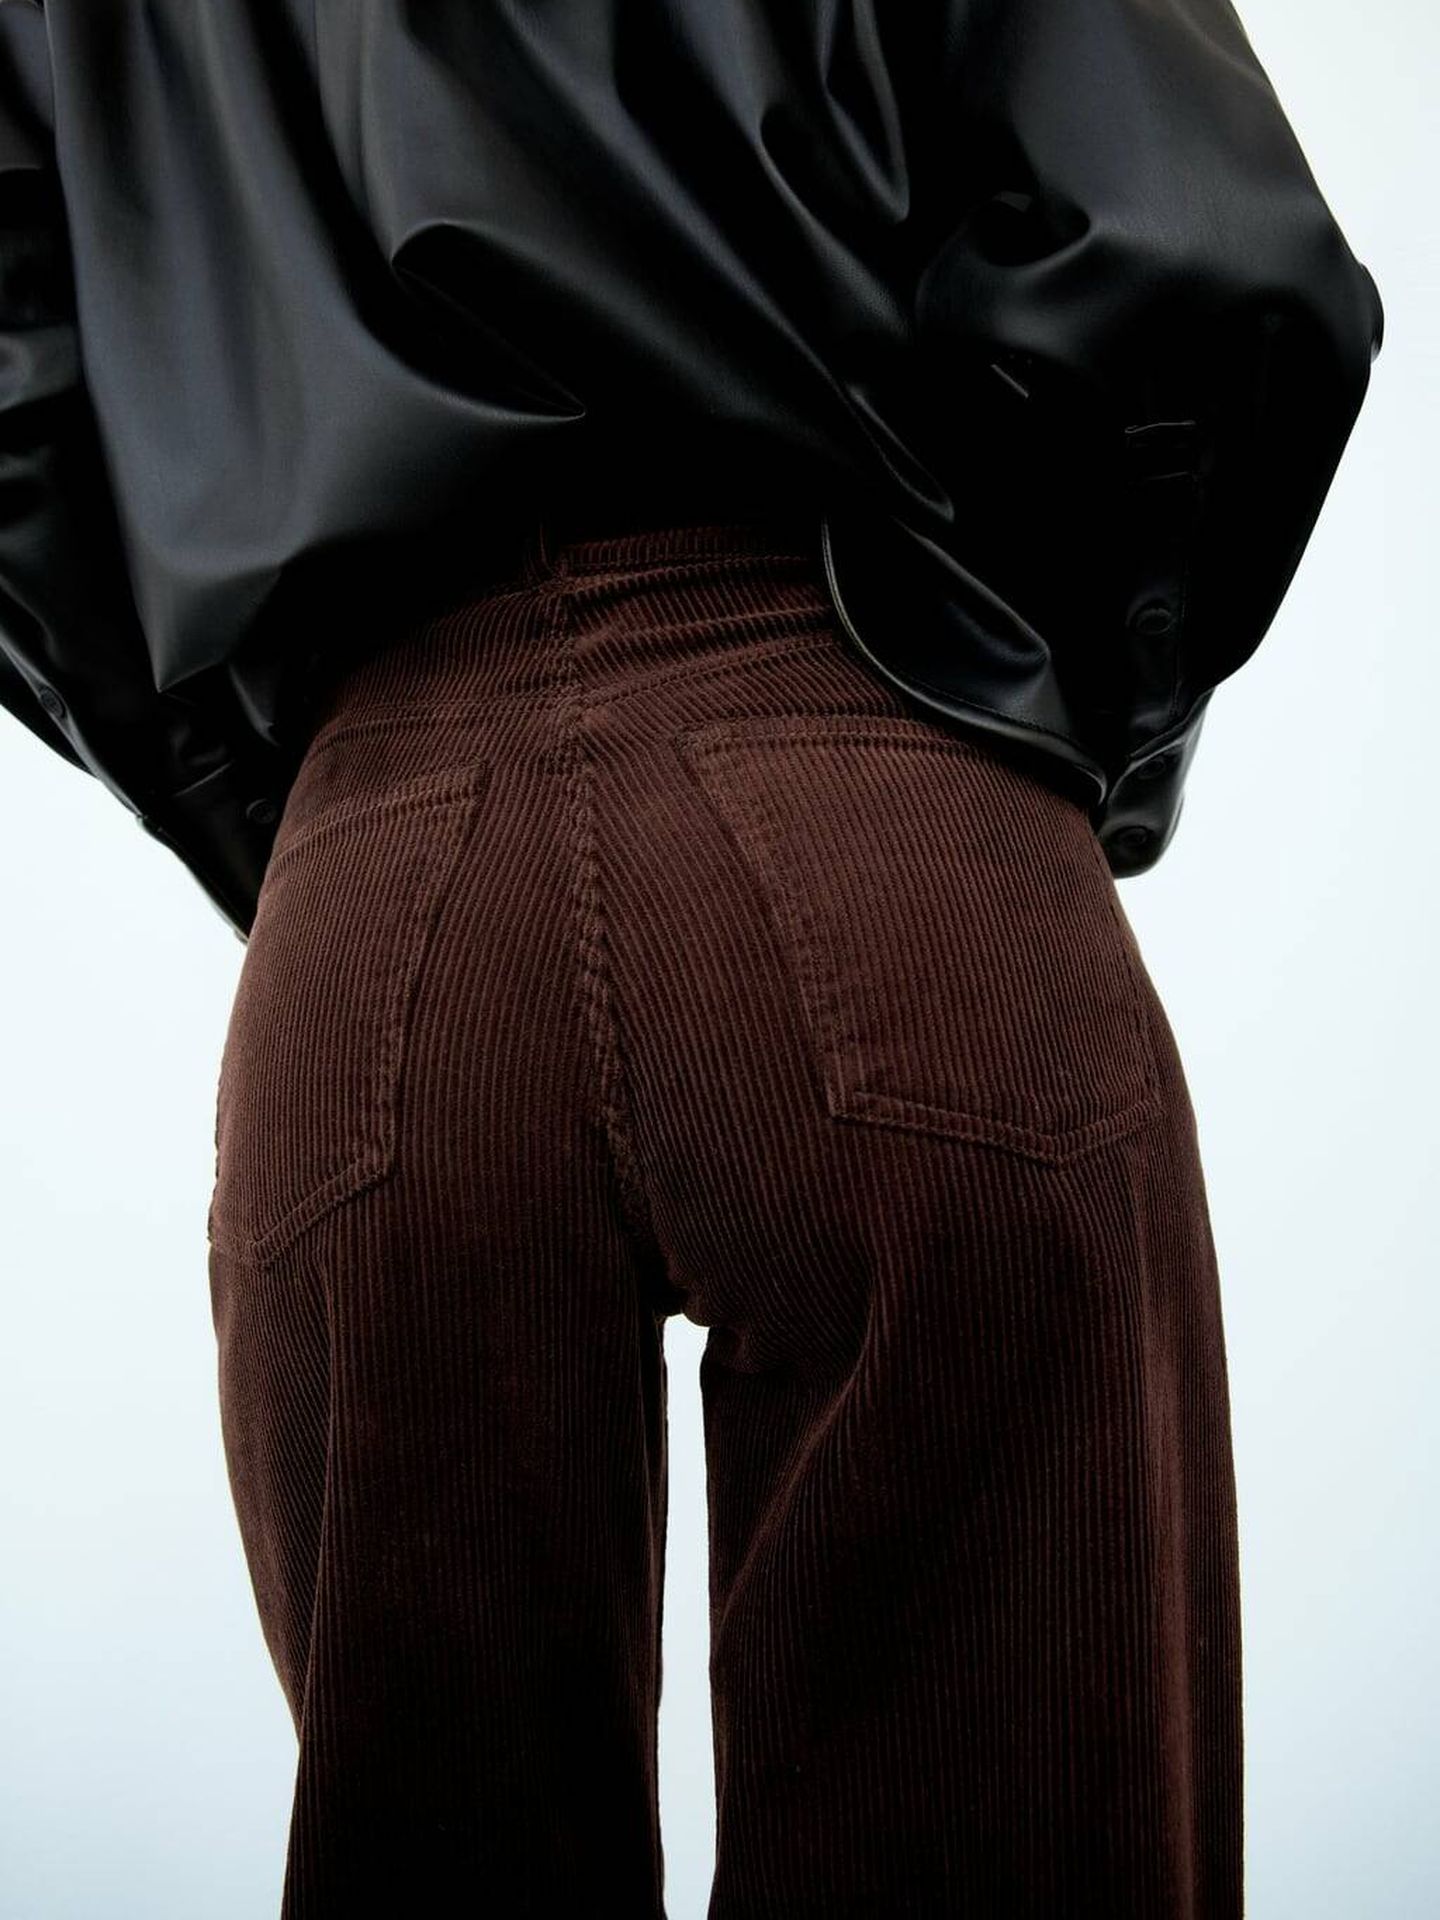 Pantalón marrón de Zara. (Cortesía)